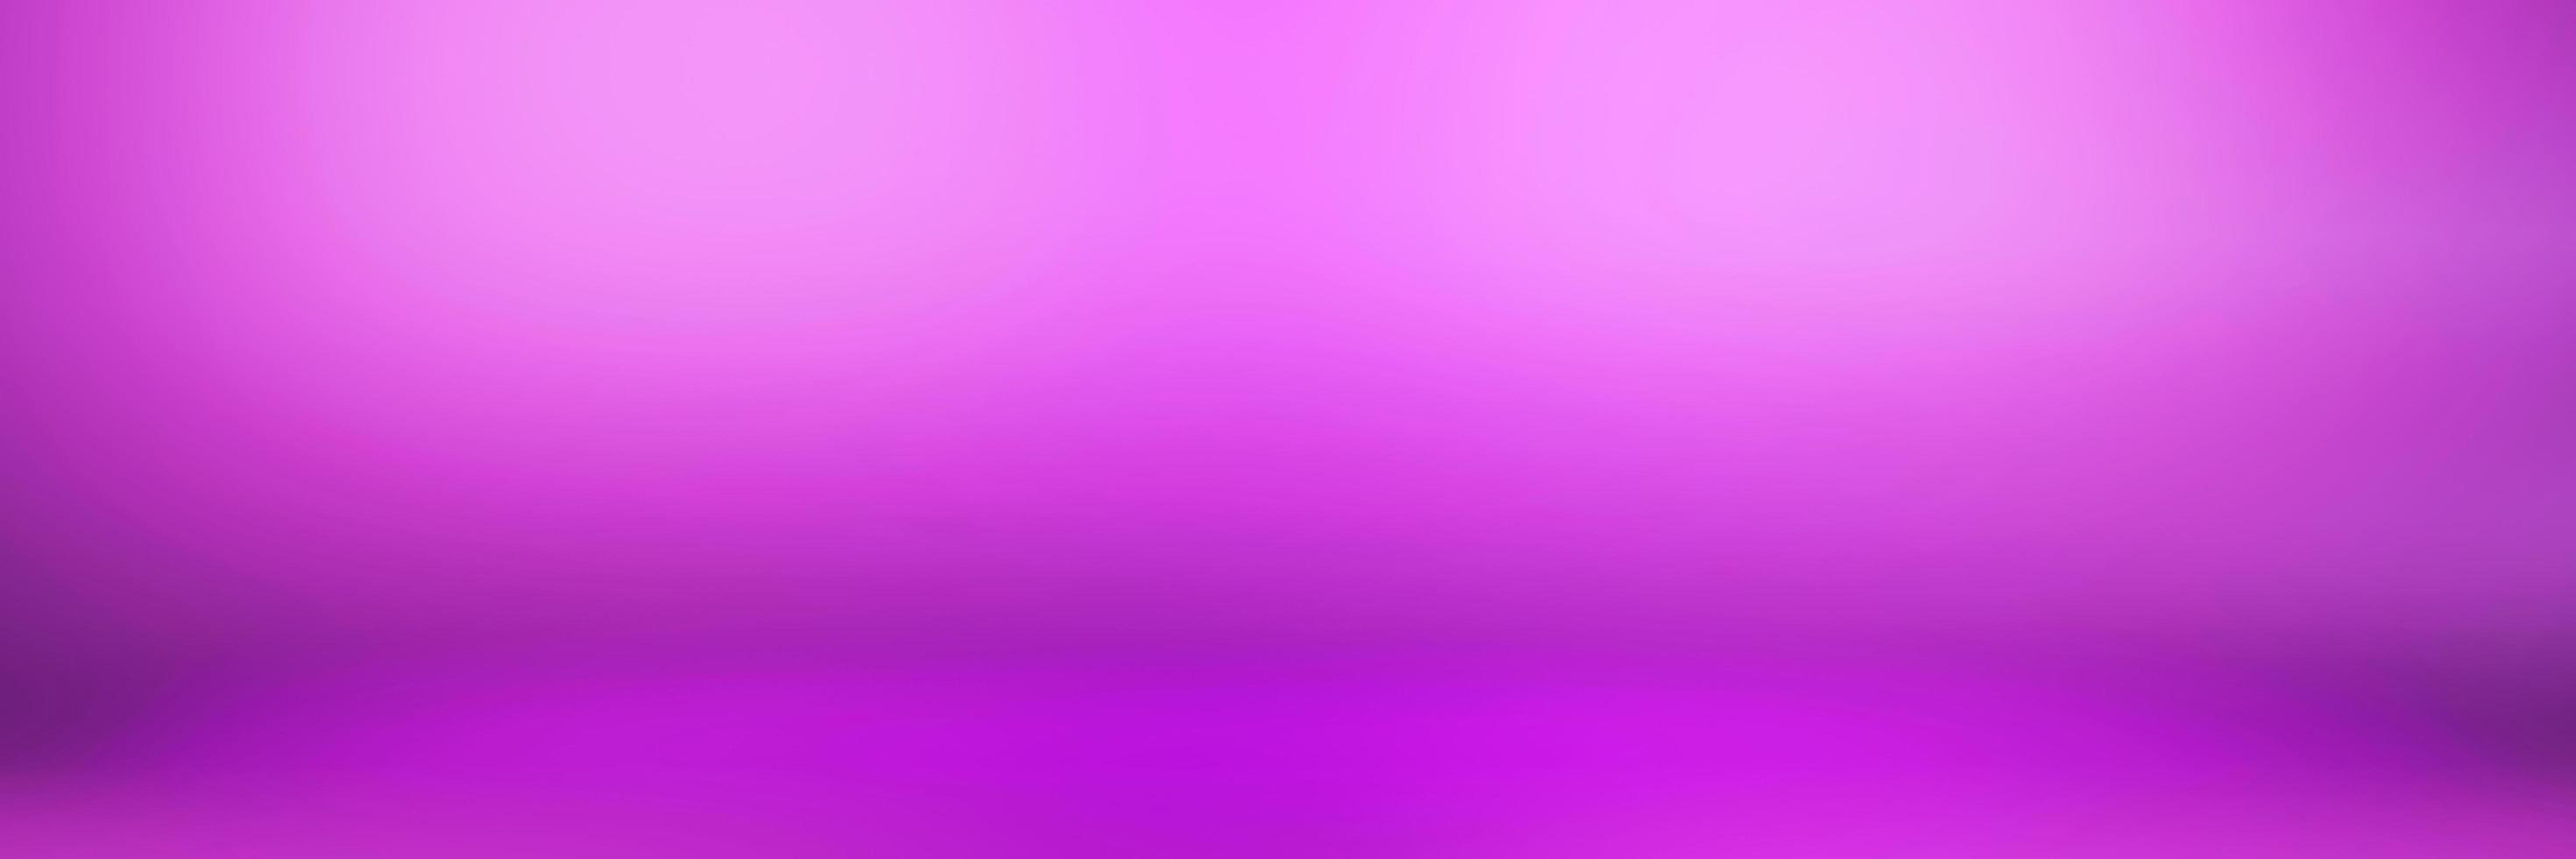 abstrakt ljus sammet violett färg gradient bakgrund foto